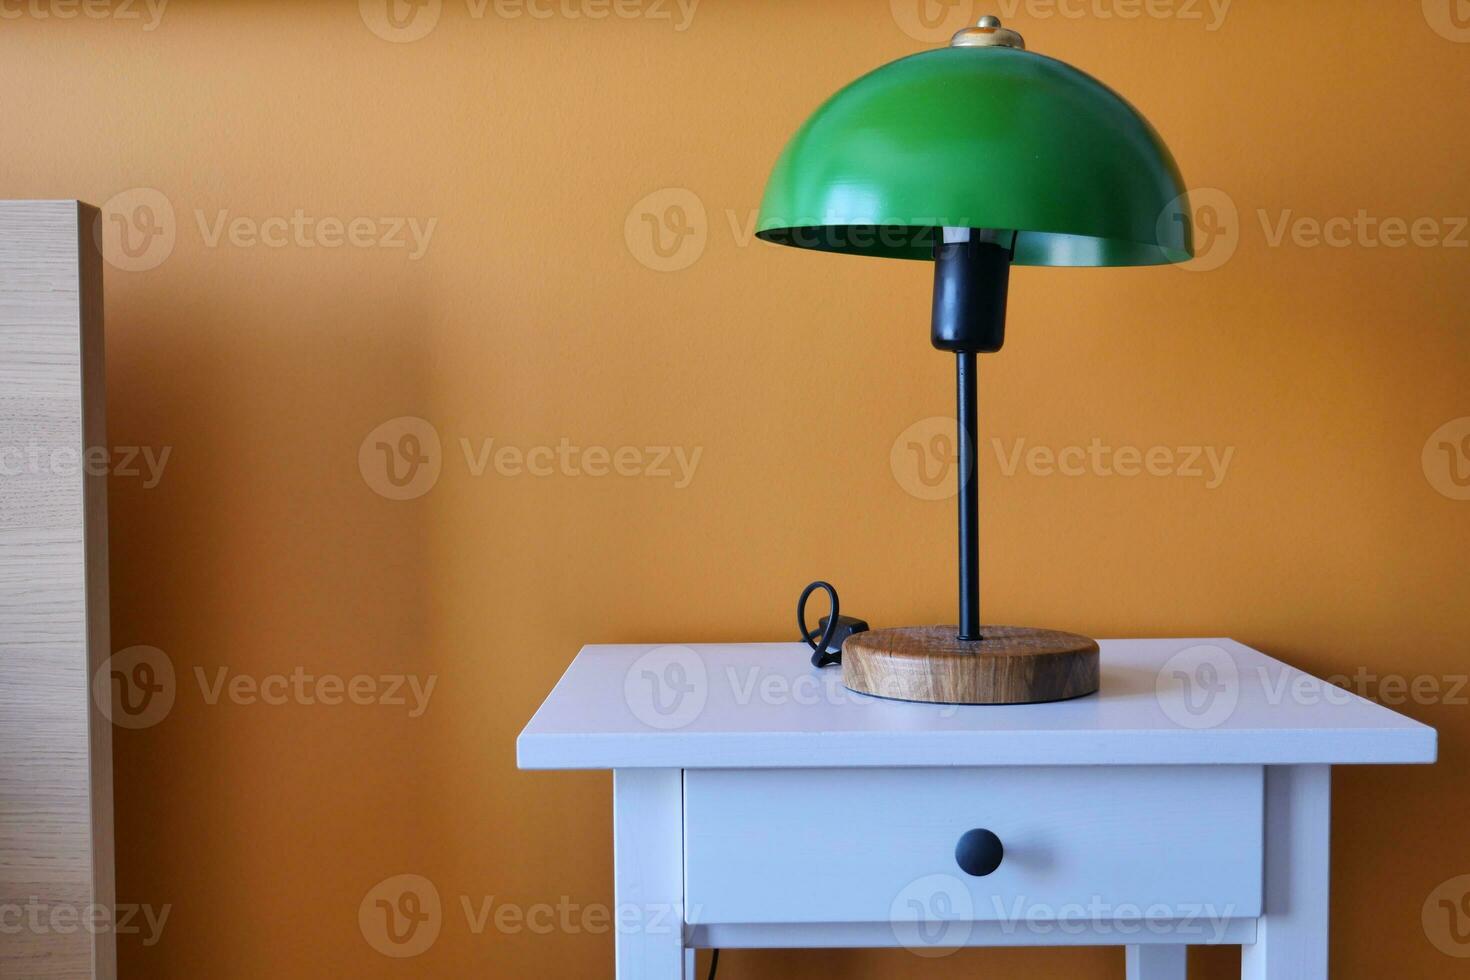 tabell lampa mot orange Färg vägg i säng rum foto